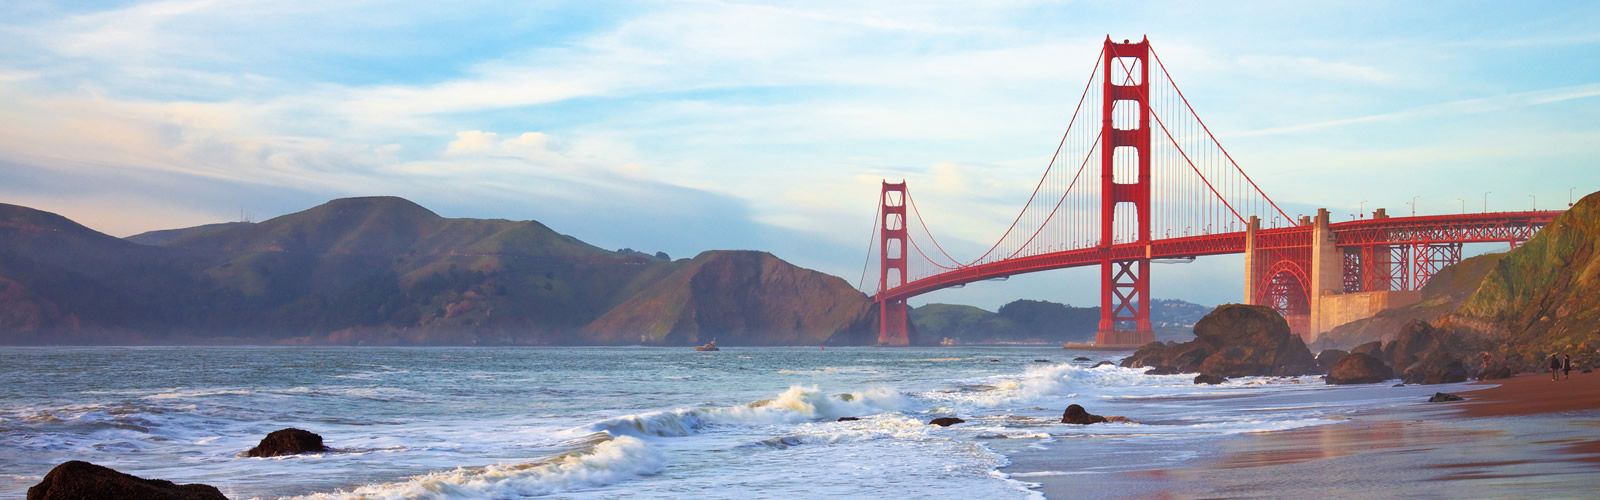 Golden Gate Urology Urologists Bay Area California